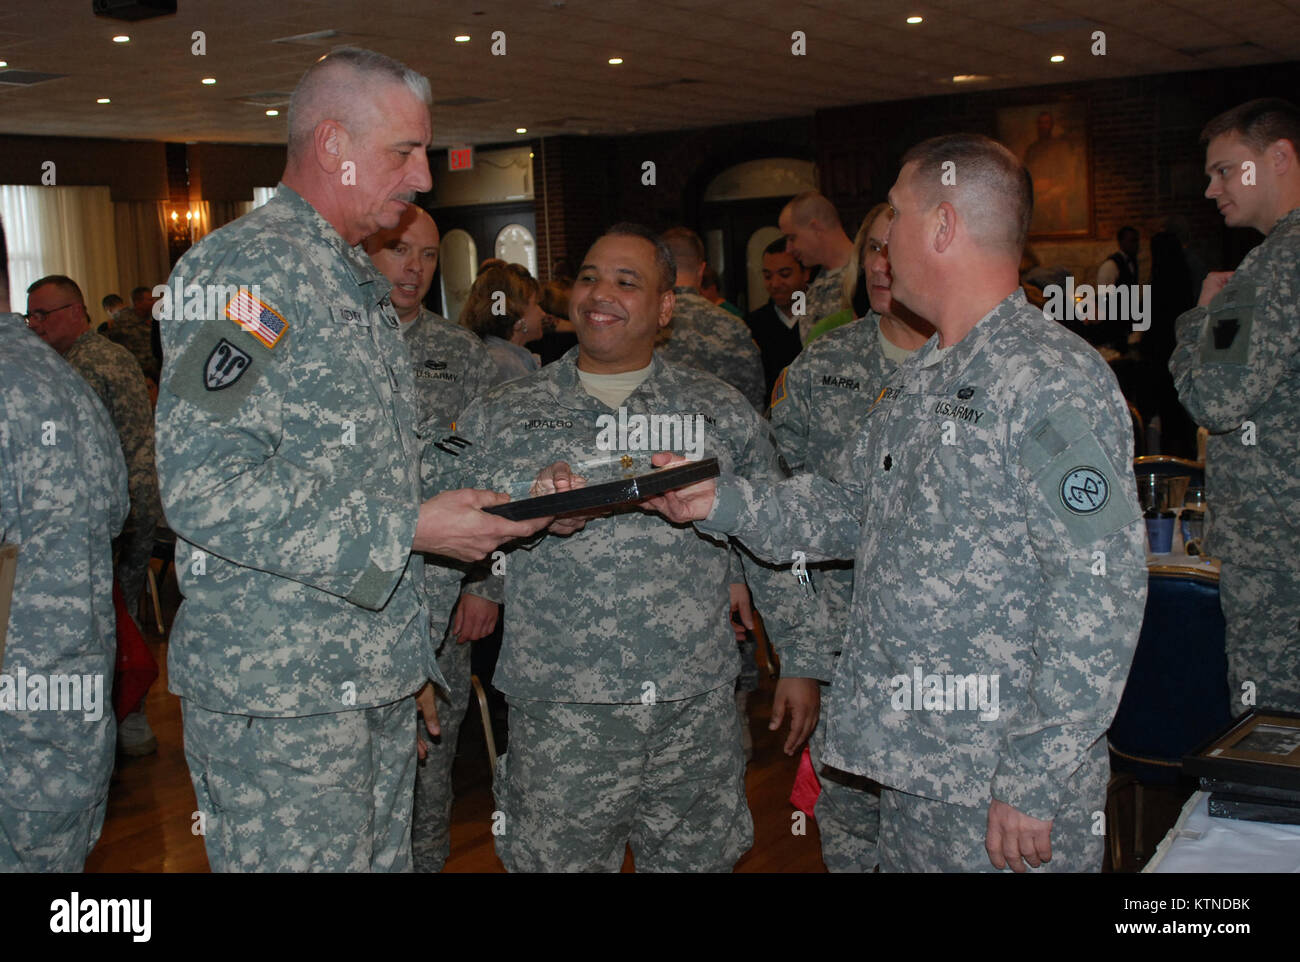 NEW YORK - New York El Teniente Coronel de la Guardia Nacional del Ejército Brian DeReamer, derecha, presenta elementos de reconocimiento de cinta amarilla a soldados de la 174ª Estabilidad Equipo de Transición durante su libertad Salute ceremonia aquí el 16 de marzo en Fort Hamilton para reconocer los logros del equipo y el apoyo de sus familias. El equipo desplegado en Afganistán en 2012. Los soldados también recibieron sus premios de implementación, incluyendo la Medalla de la Campaña Afgana de la ISAF y la OTAN Medalla por su servicio en uno de los ocho equipos que operan a través de Afganistán, proporcionando capacitación y adiestramiento a las fuerzas de seguridad afganas. Phot del Ejército de EE.UU. Foto de stock